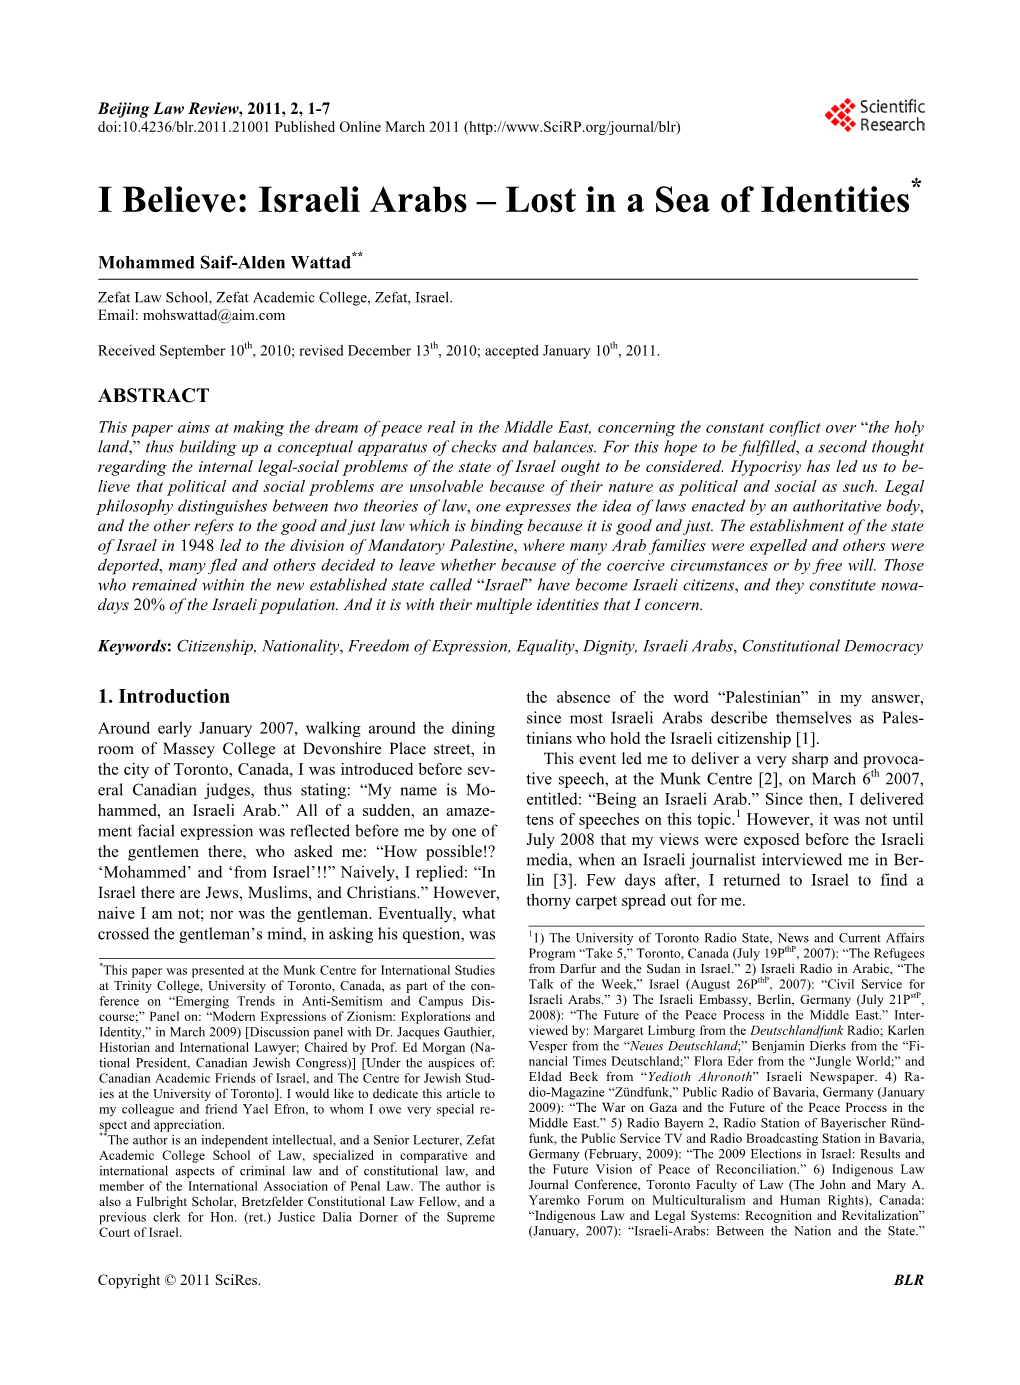 I Believe: Israeli Arabs – Lost in a Sea of Identities*